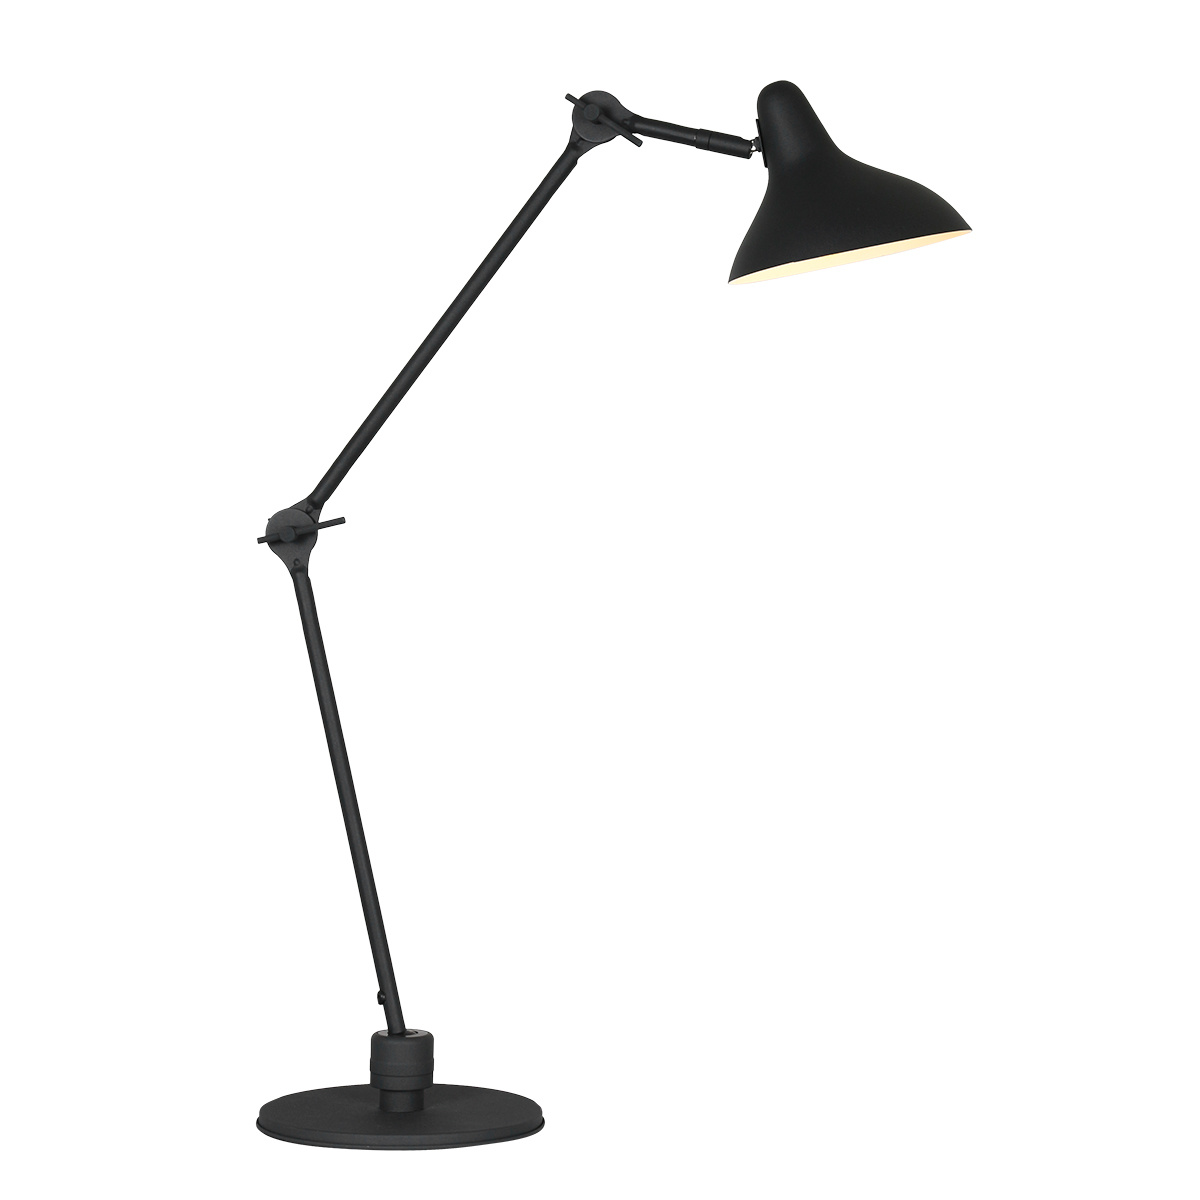 Anne Light & home Tafellamp anne kasket 2692zw zwart